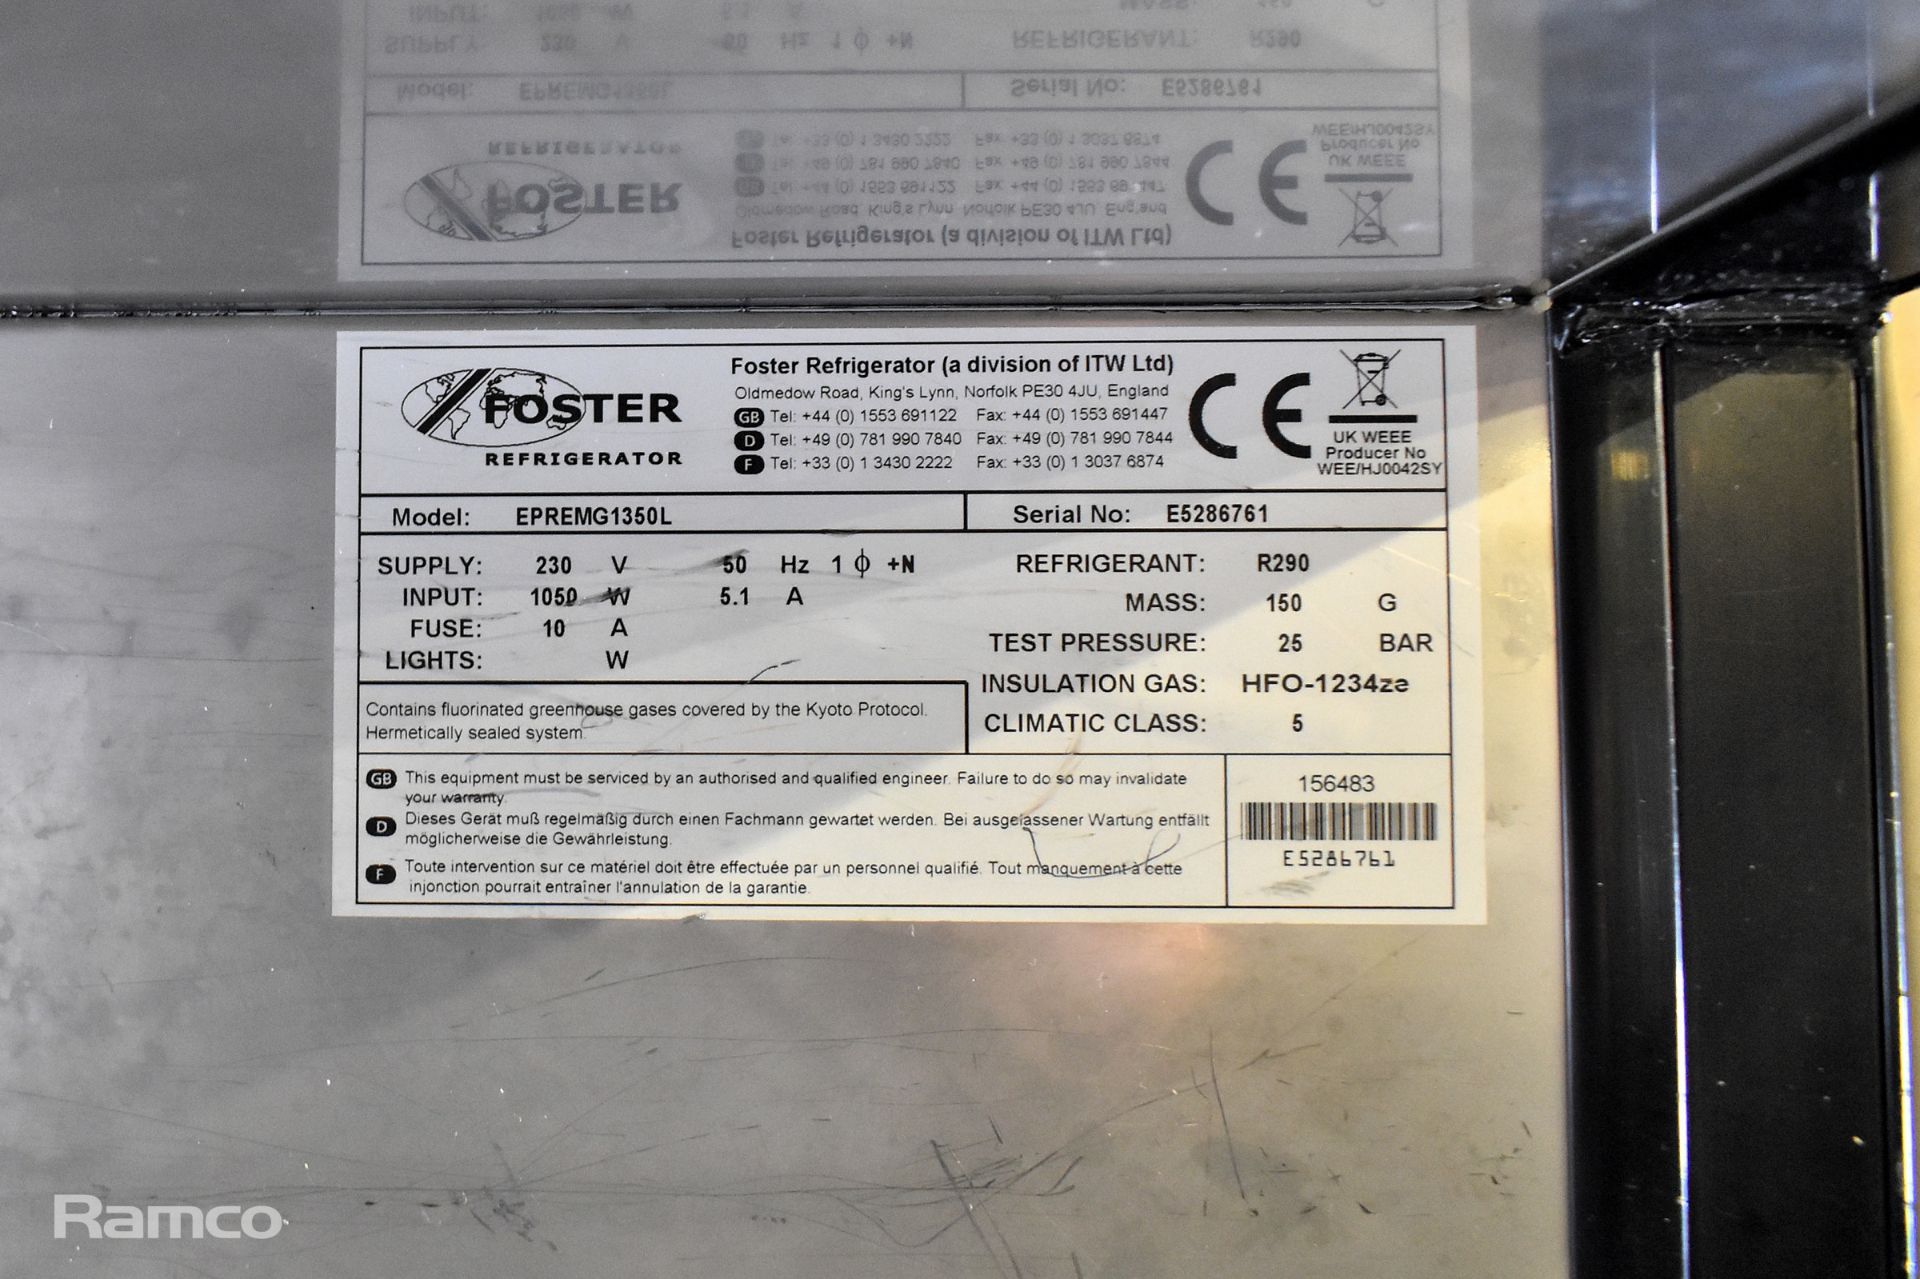 Foster EPREMG1350L stainless steel double door freezer - 1450mm W - Image 4 of 5